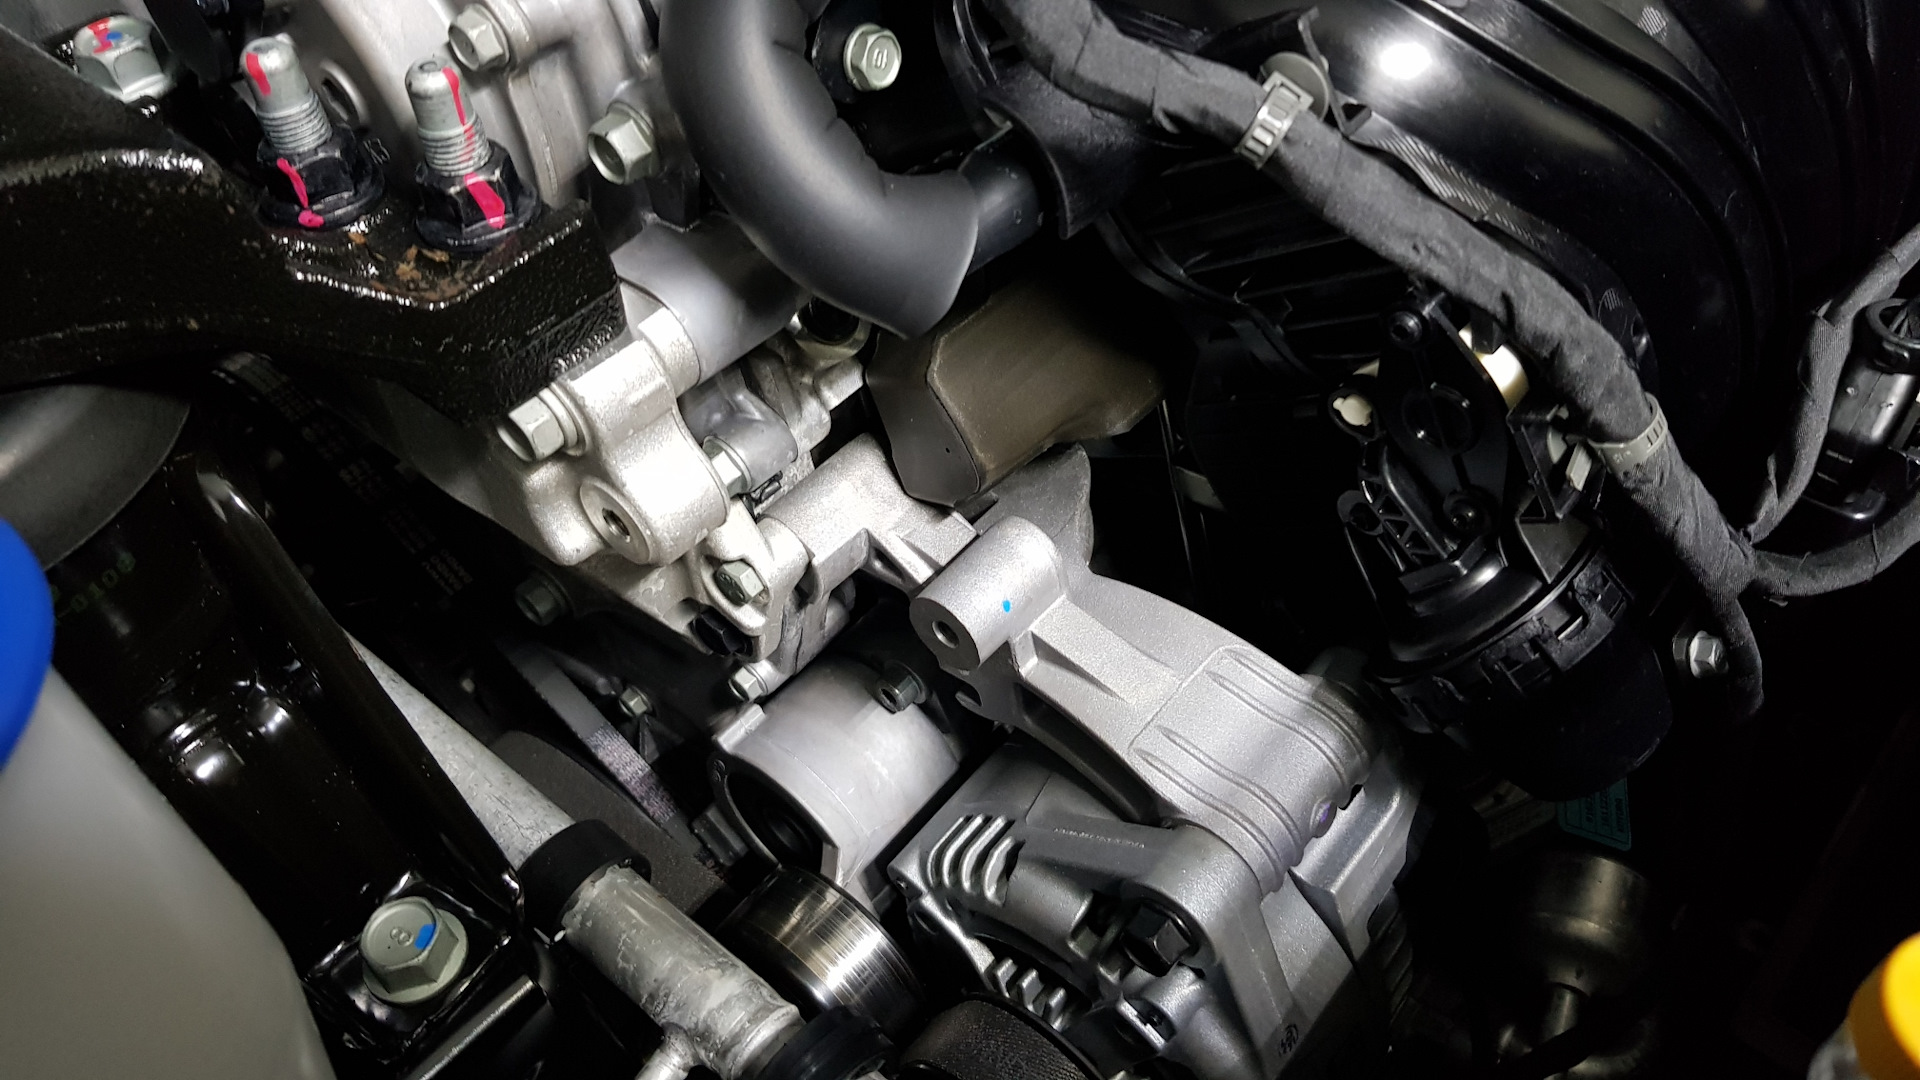 Купить двигатель киа оптима. Мотор Киа Оптима 2.4. Датчик распредвала Киа Оптима 2.4. Распредвал датчик кия Оптима 2,4. Киа Оптима 2019 двигатель 2.4.